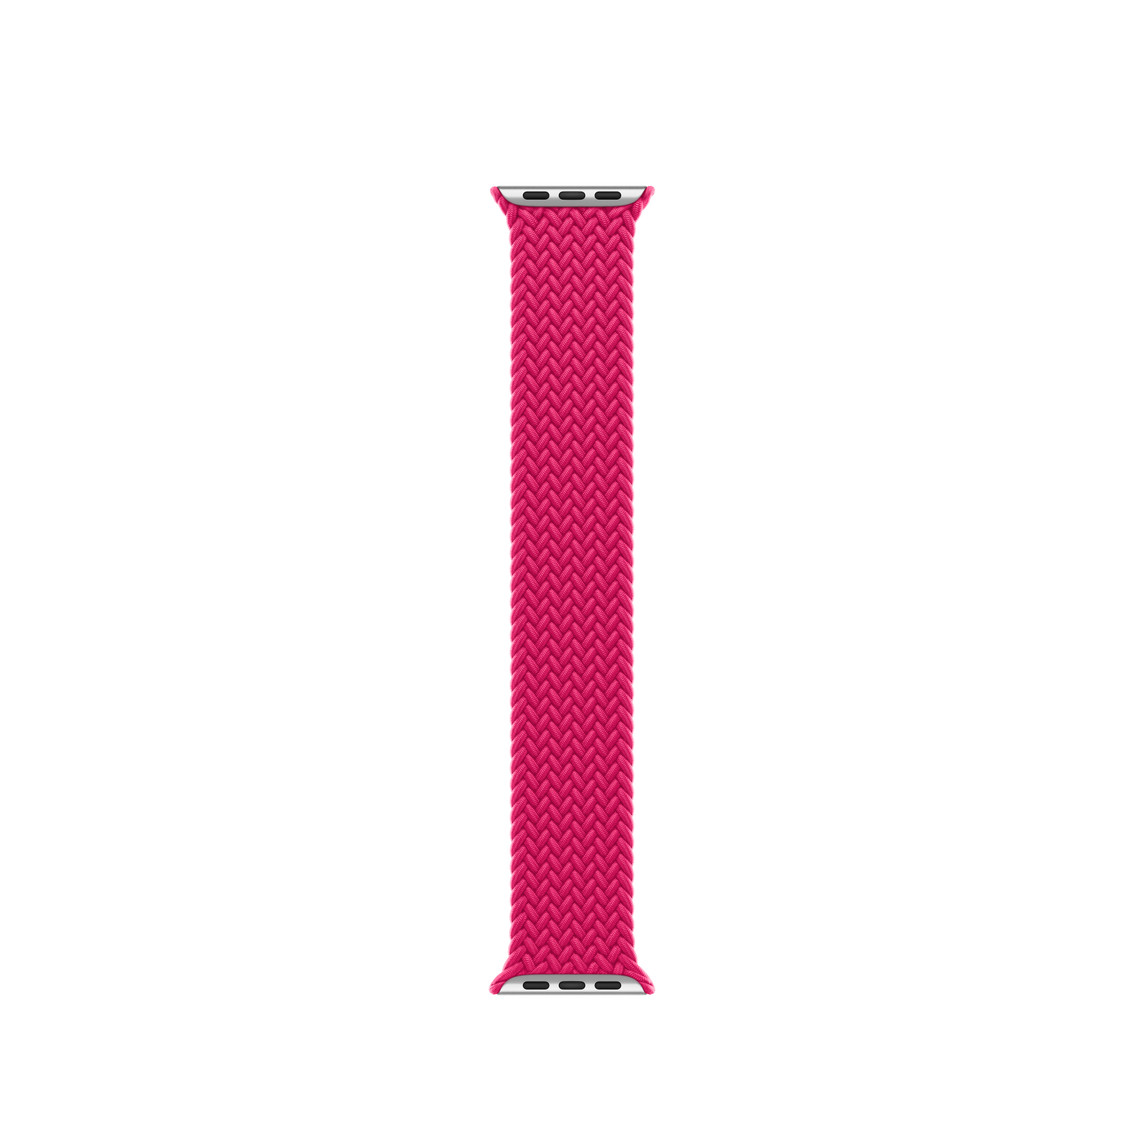 树莓色编织单圈表带，展示交错编织的聚酯纤维和硅胶丝材质以及无表扣设计。